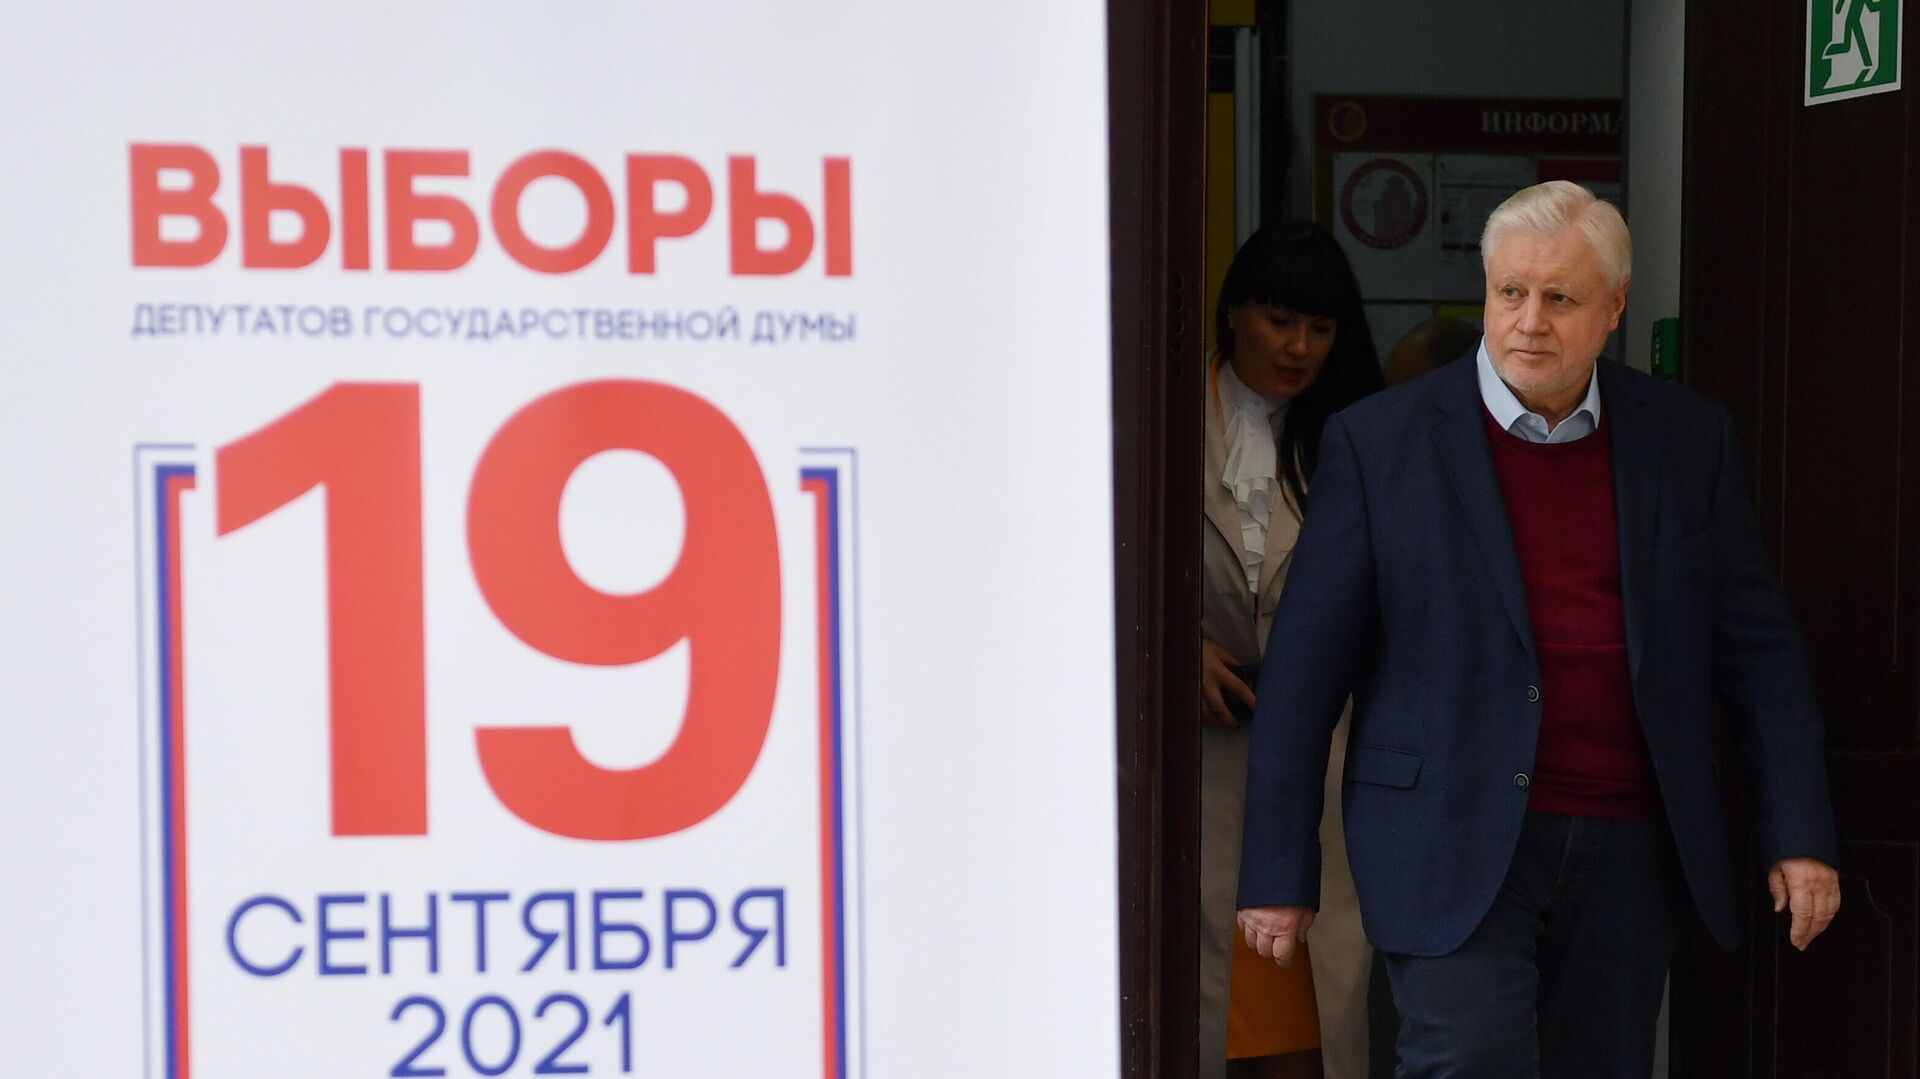 Прилепин отказался от мандата депутата Госдумы